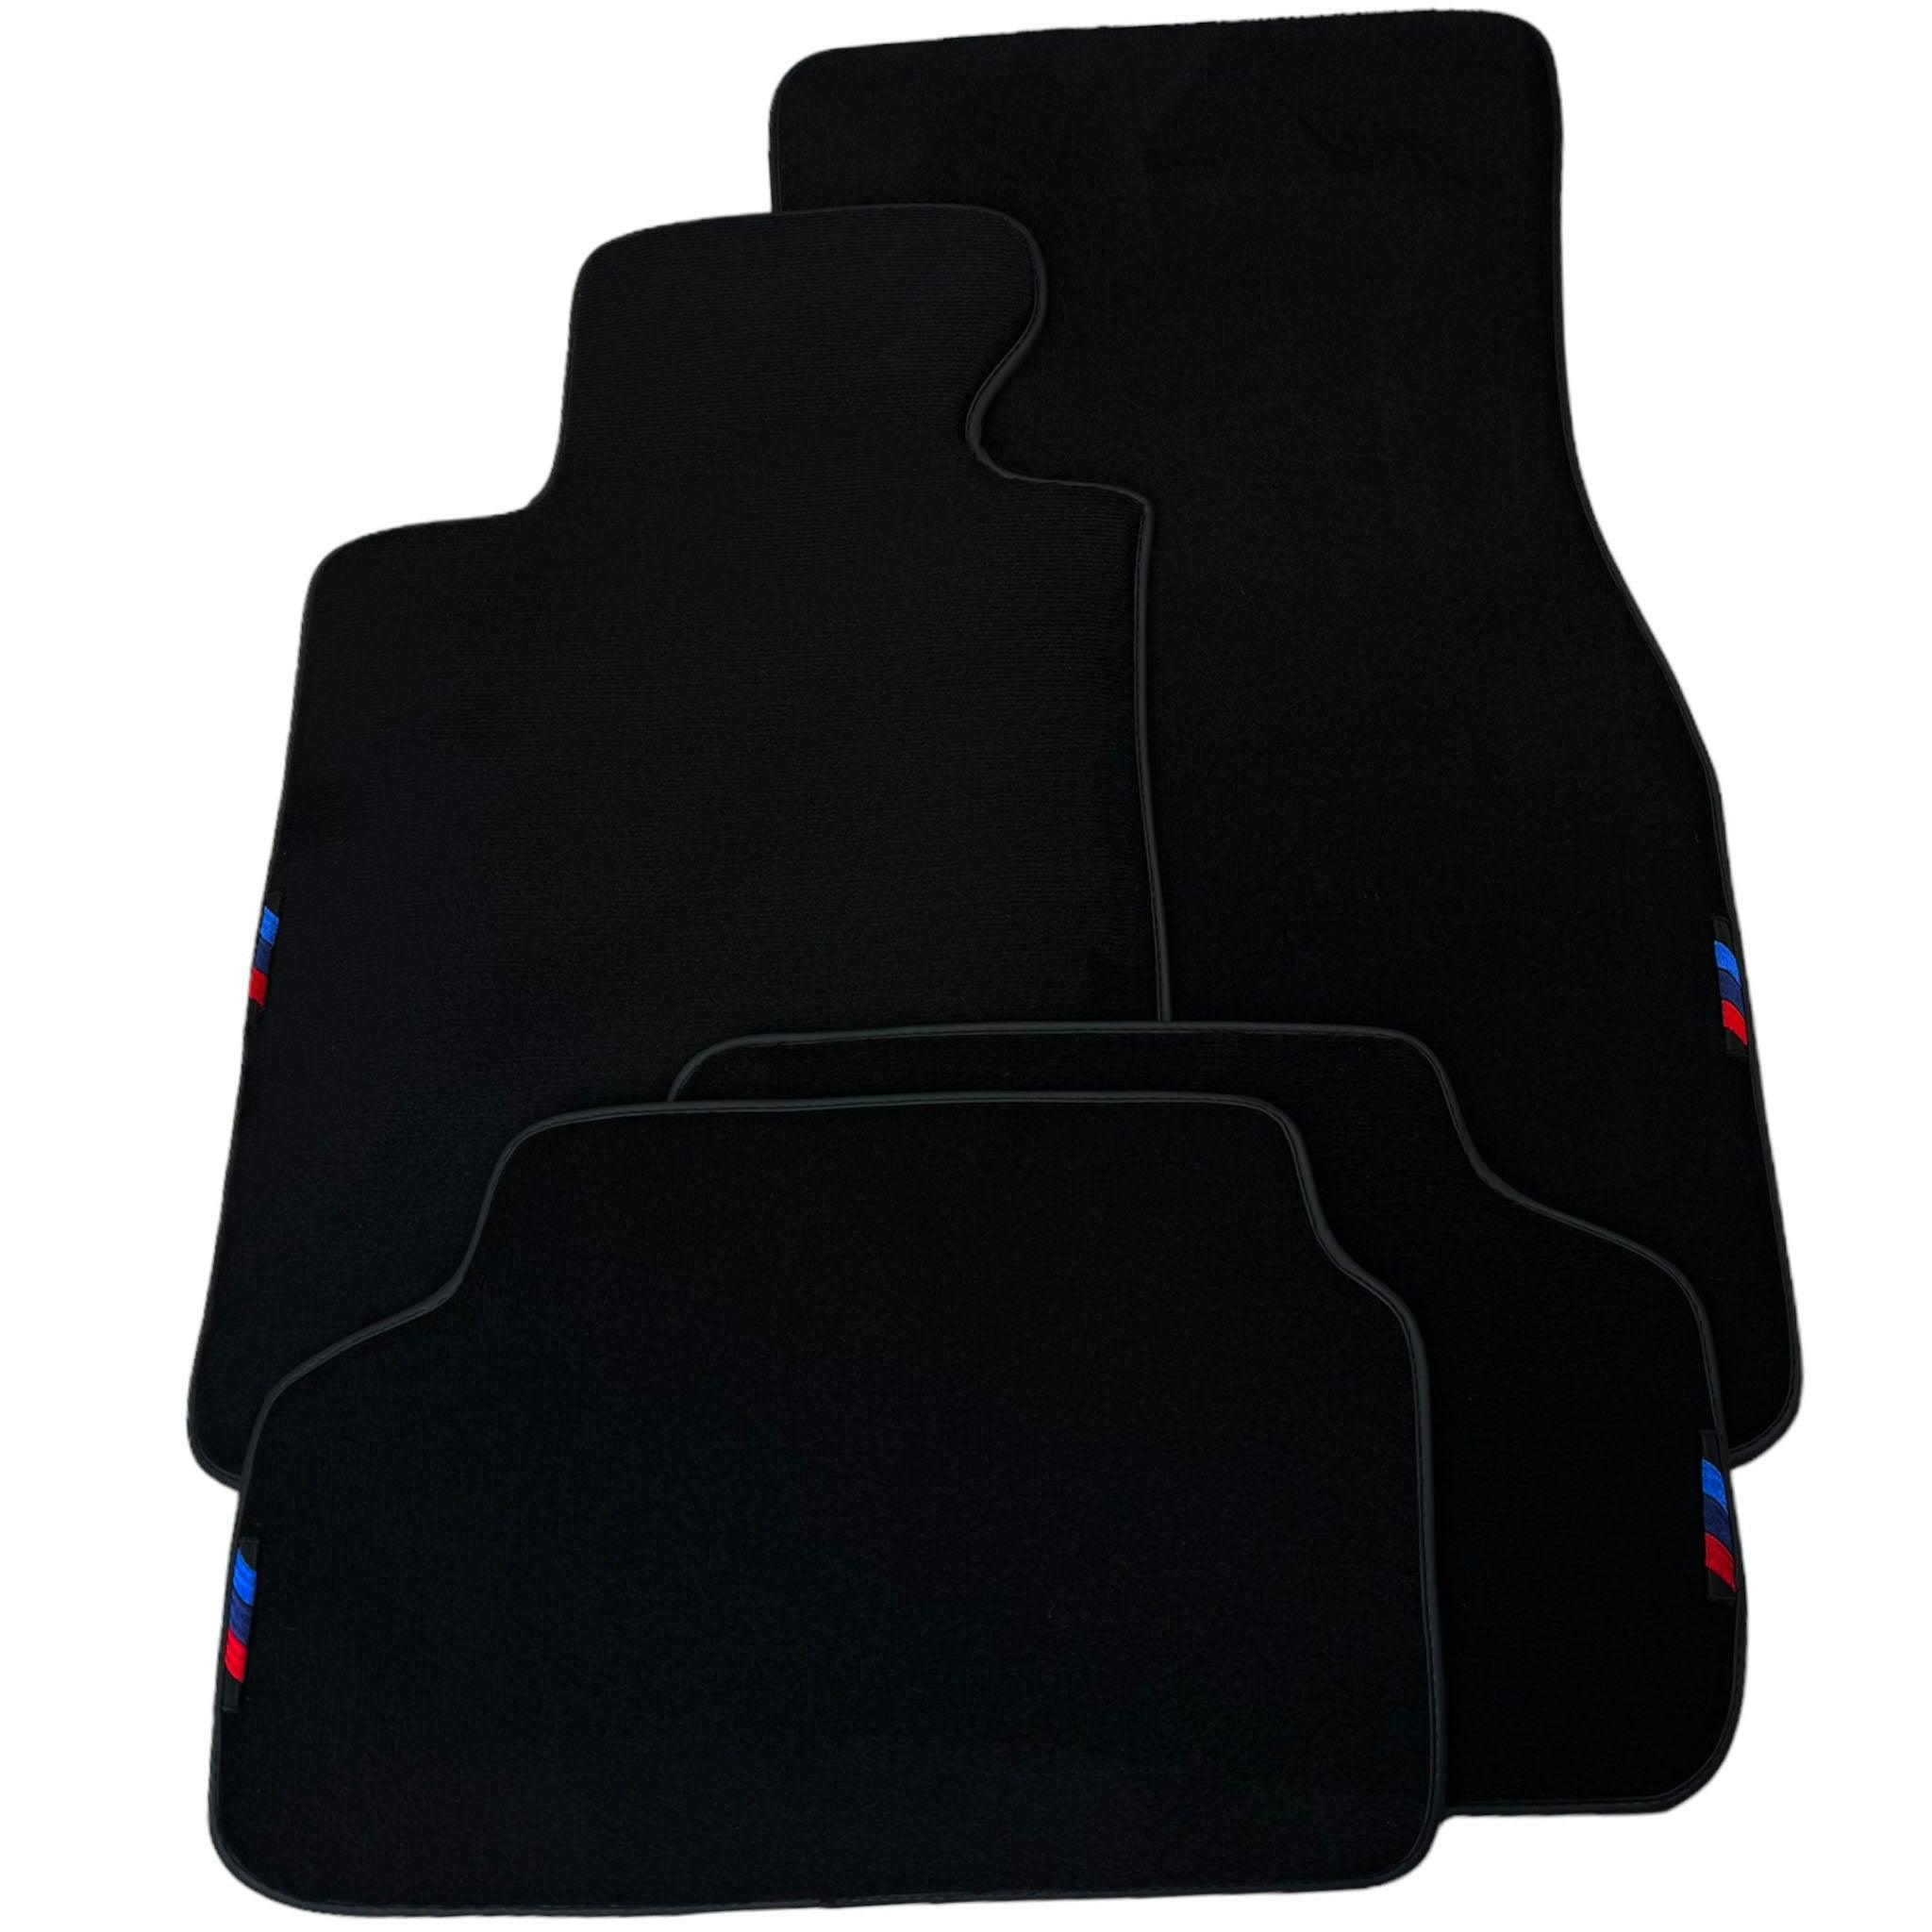 Black Floor Mats For BMW 3 Series E36 2-door Coupe | Black Trim